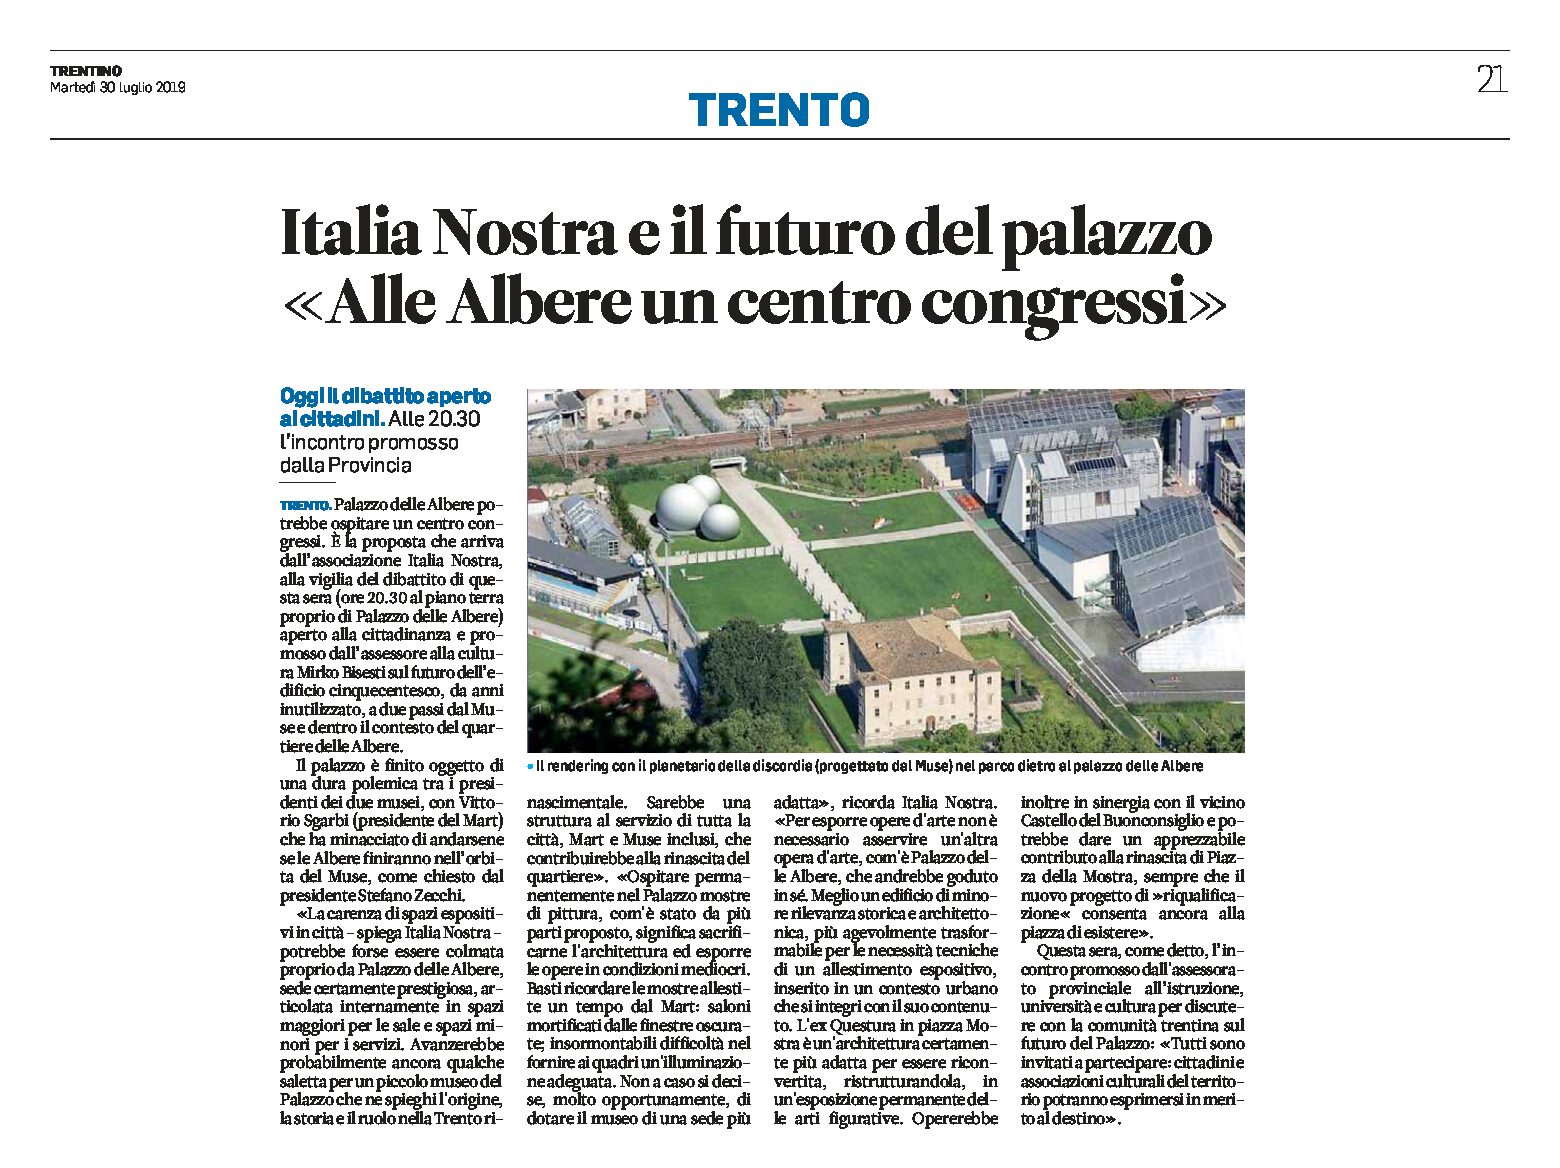 Trento, palazzo delle Albere: Italia Nostra e il futuro del palazzo “un centro congressi”